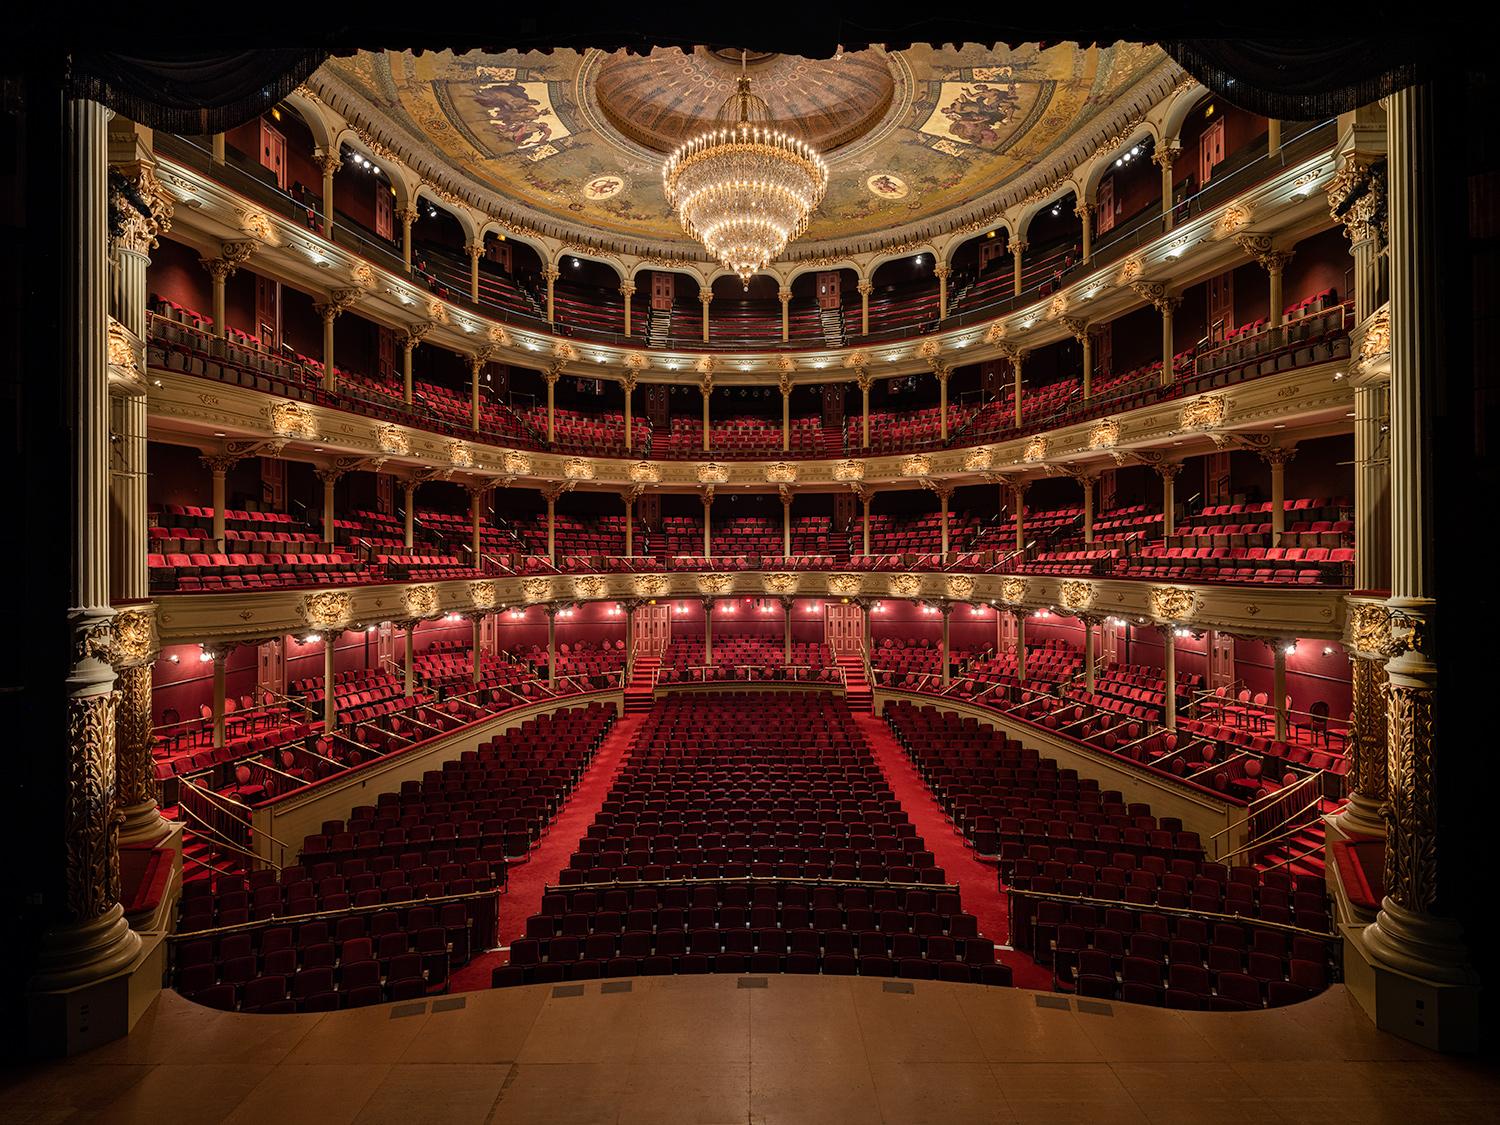 Die Academy of Music in Philadelphia wurde 1857 eröffnet und ist das älteste noch existierende Opernhaus in Amerika. Die "Grande Olde Lady of Locust Street" hat mit ihrem offenen, hufeisenförmigen Zuschauerraum und den zweistufigen Balkonen im Stil